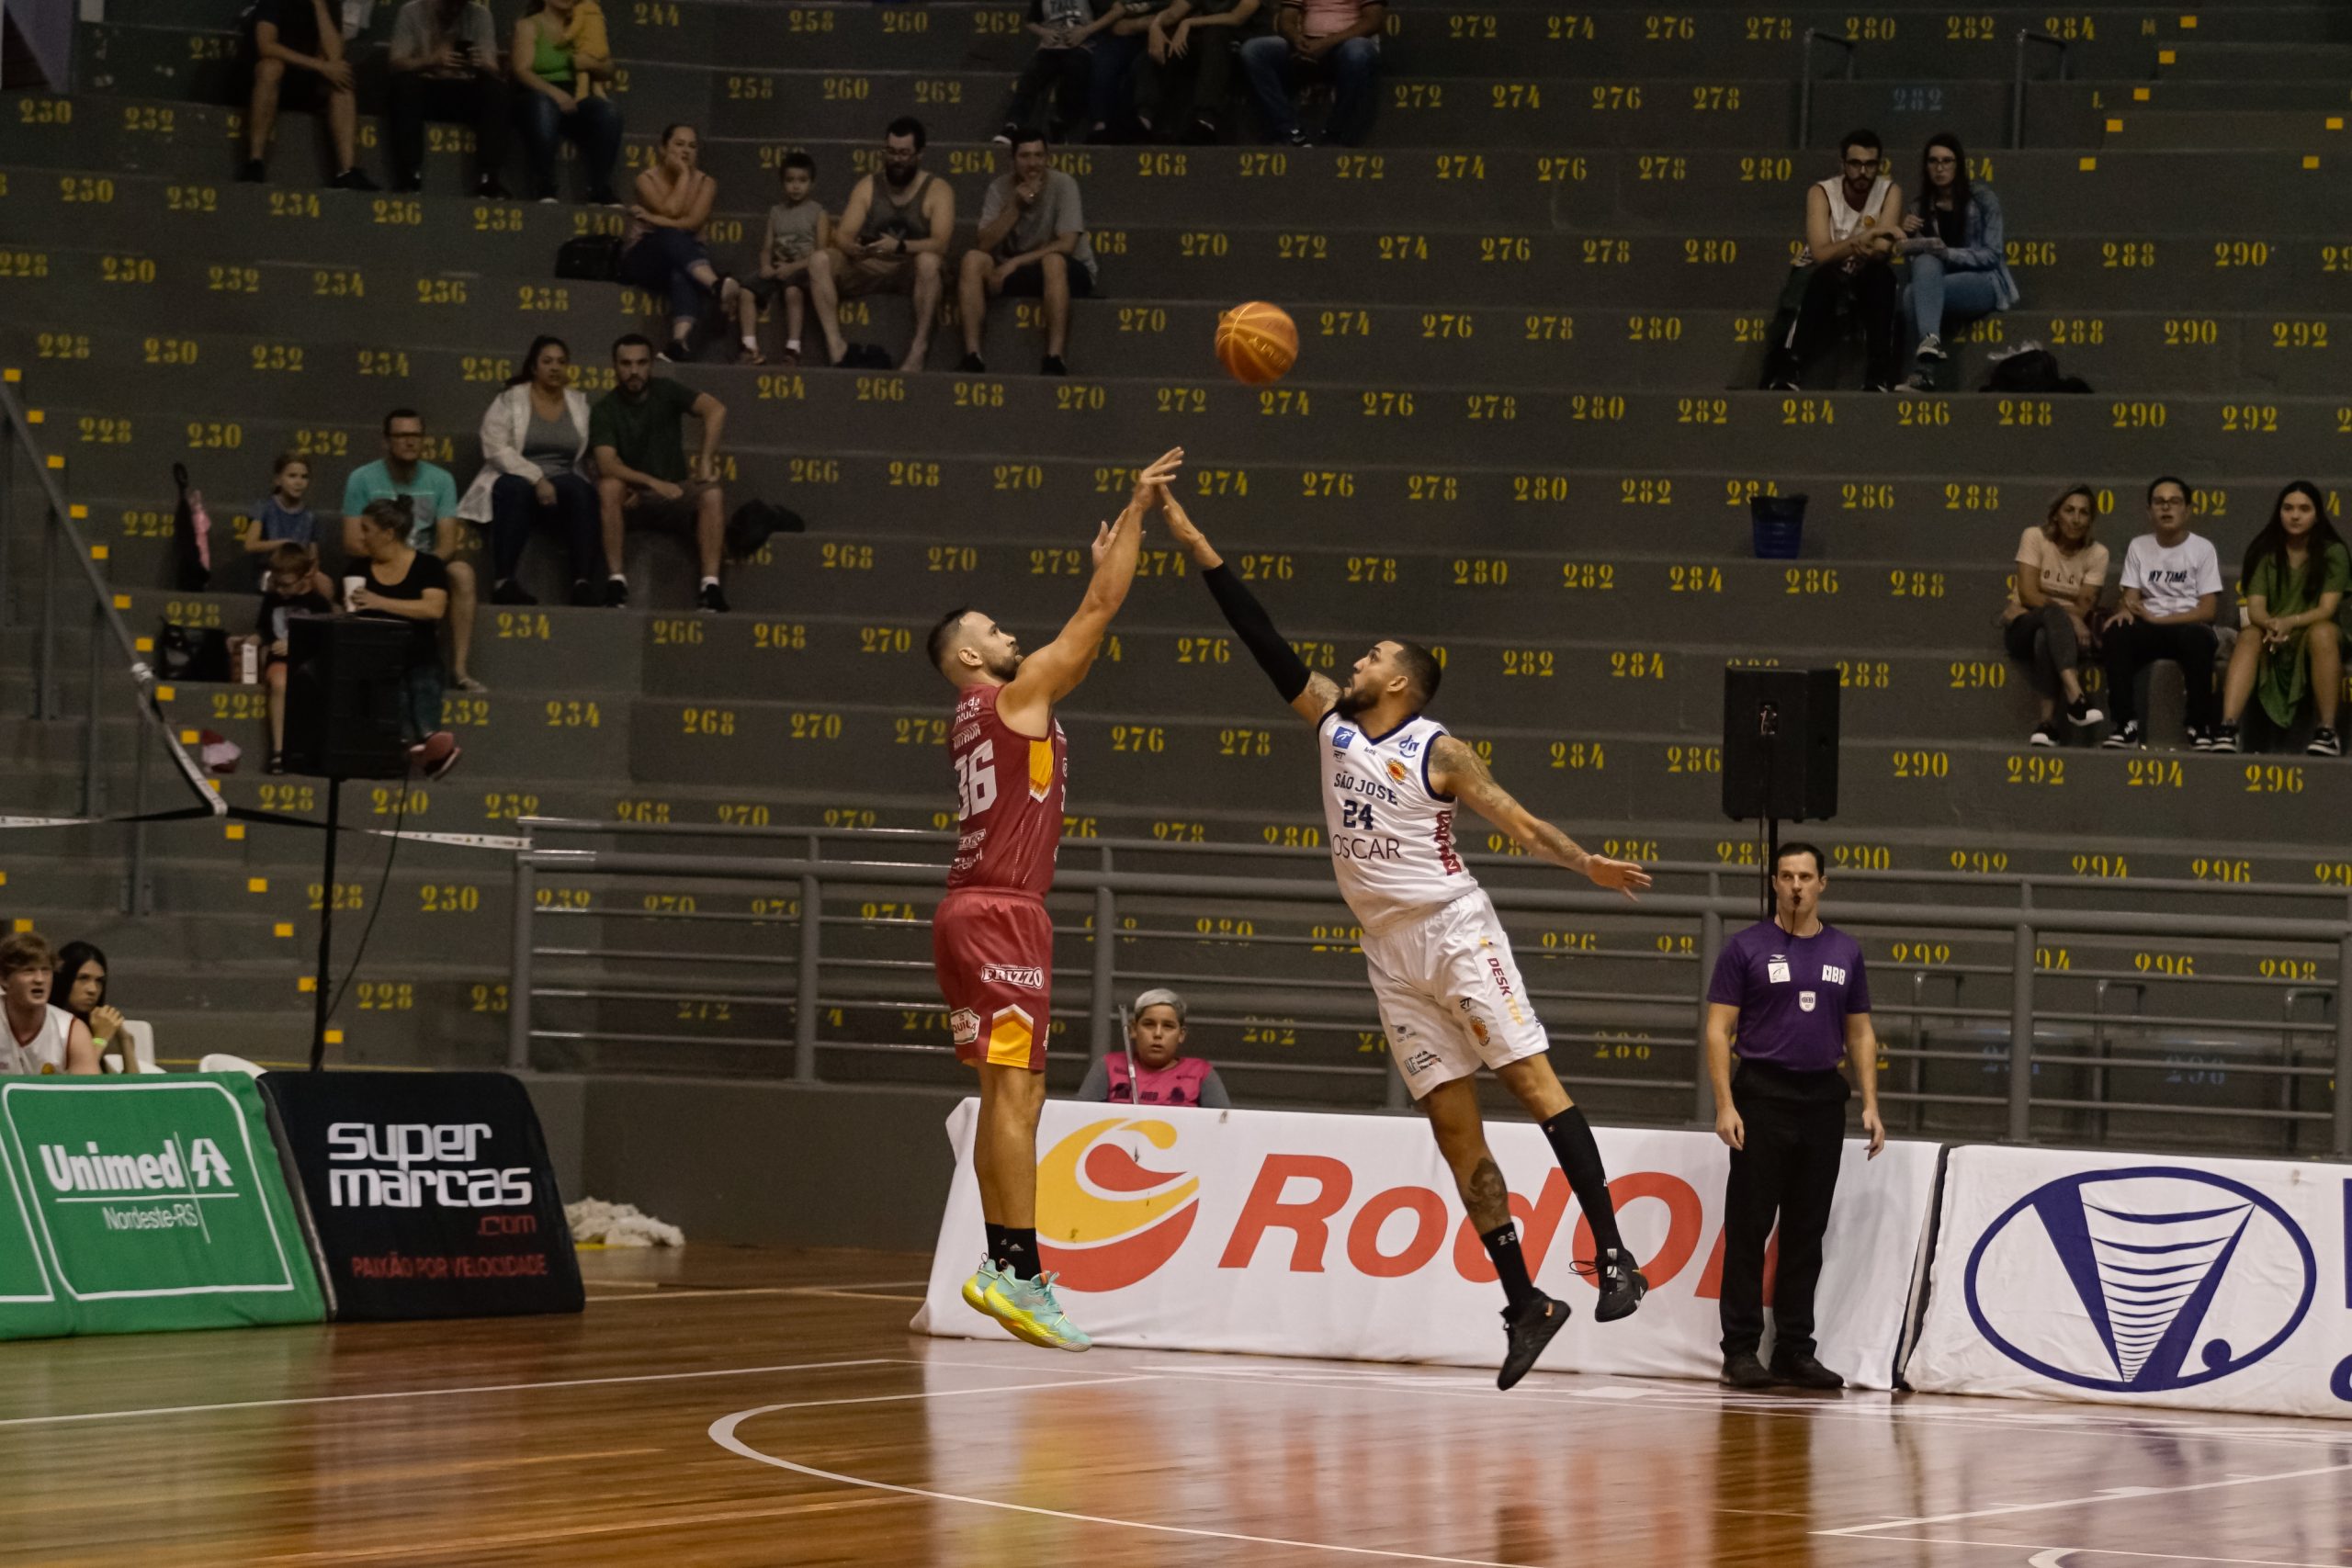 São José Basketball vence Caxias do Sul no retorno do NBB 22/23